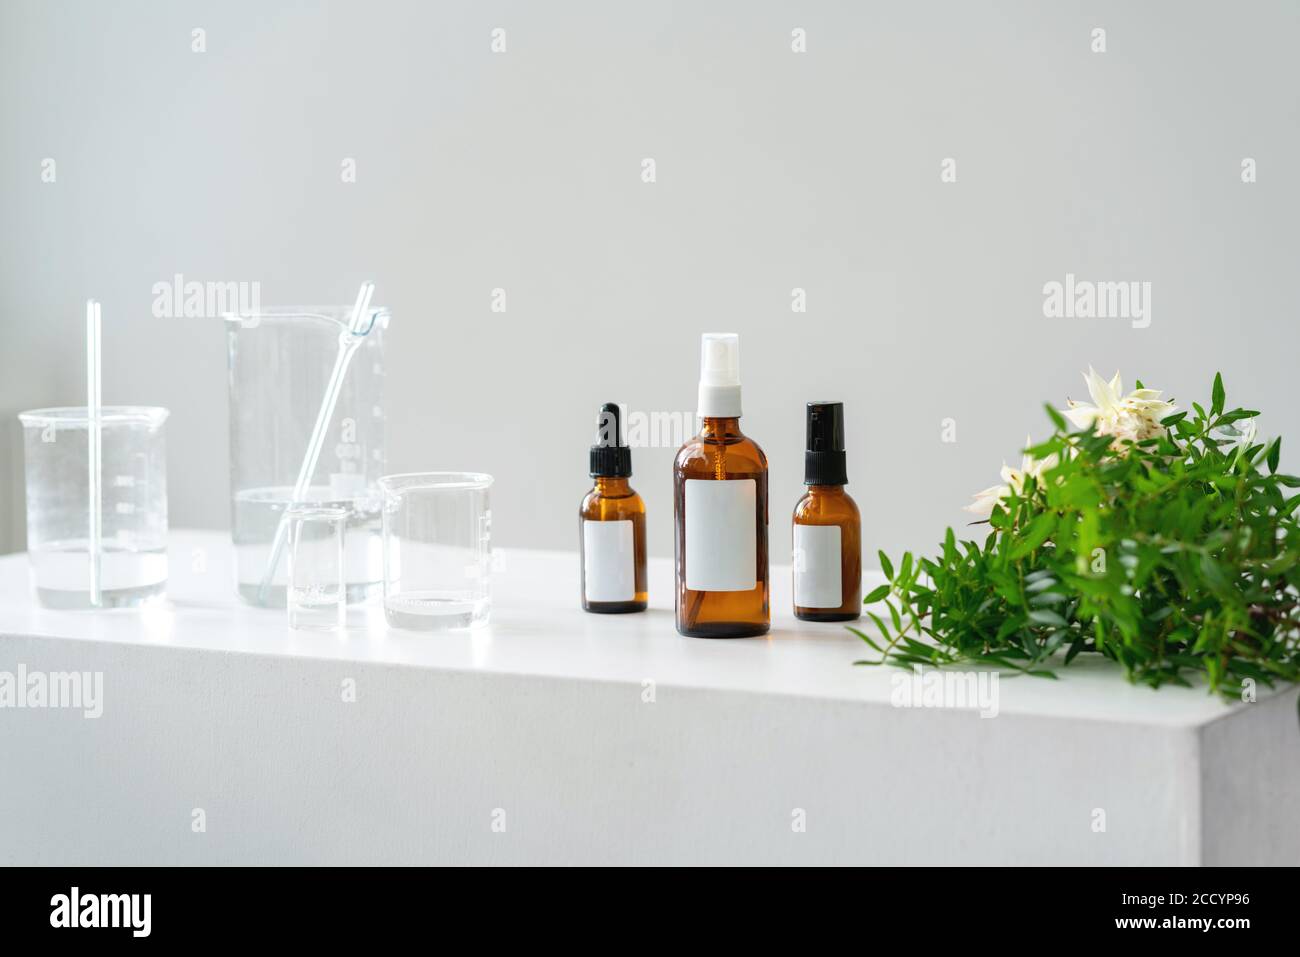 Heller kosmetischer Hintergrund. Fläschchen, Laborflaschen aus Glas auf dem Tisch. Naturkosmetik-Konzept. Stockfoto